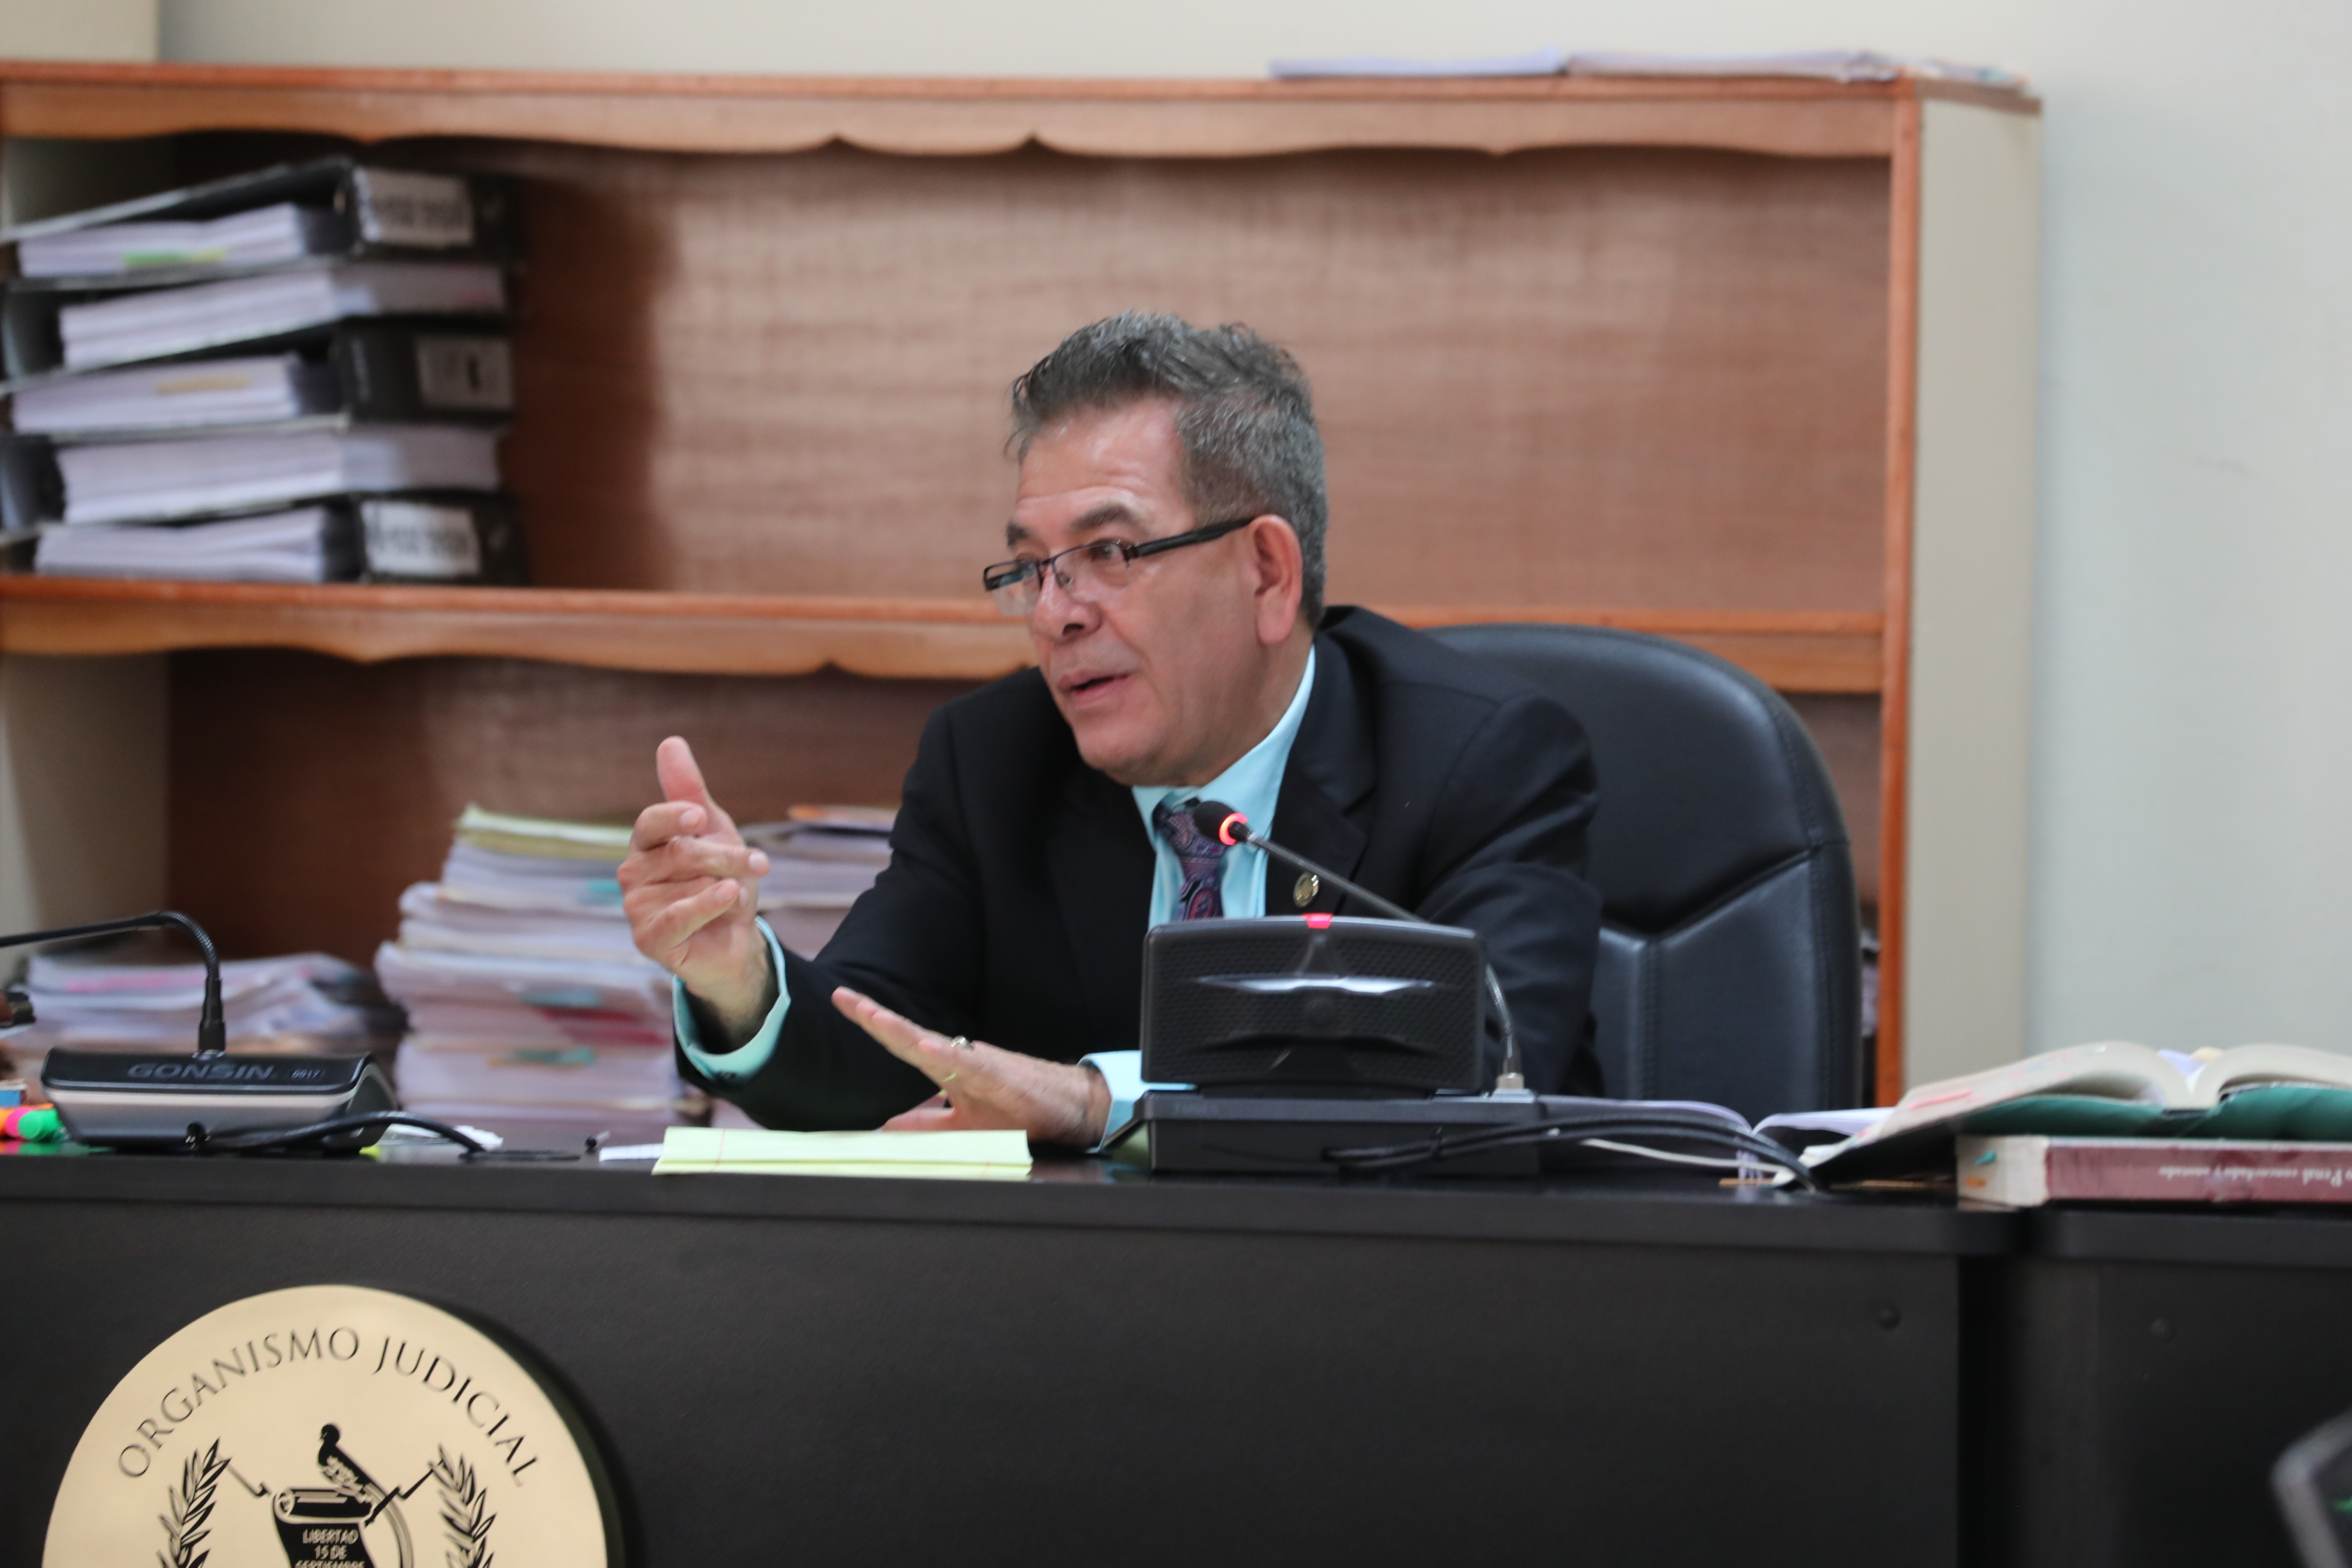 El juez Miguel Ángel Gálvez envió a juicio a nueve militares y policía retirados acusado en el Caso Diario Militar. (Foto: Hemeroteca PL)